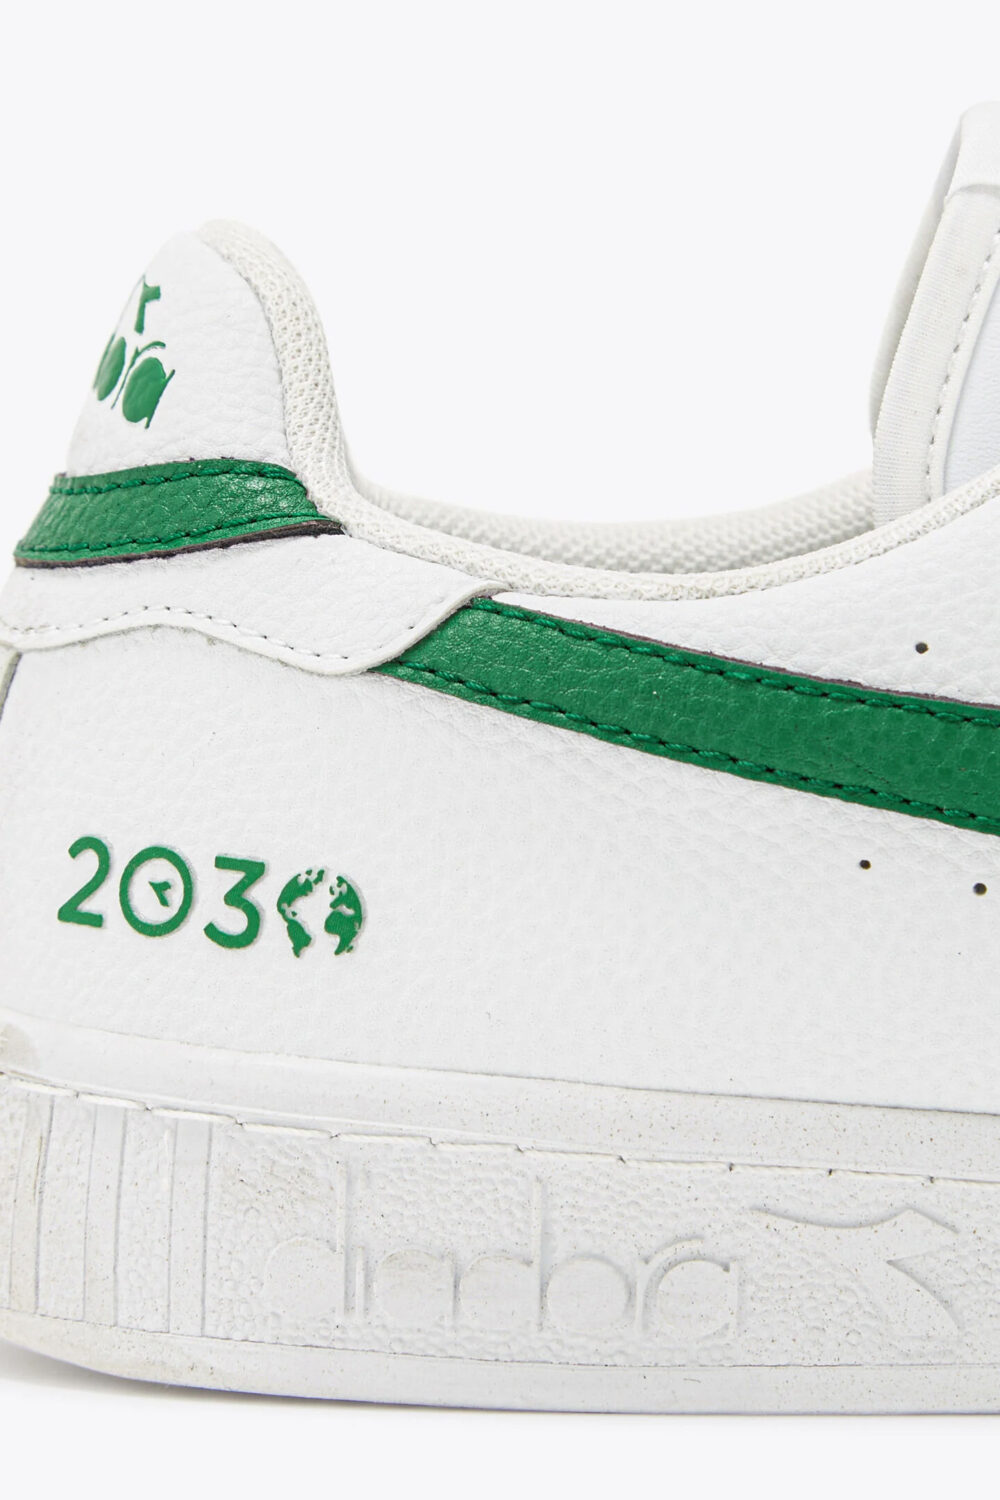 Sneakers Diadora game l low 2030 Verde - Foto 3